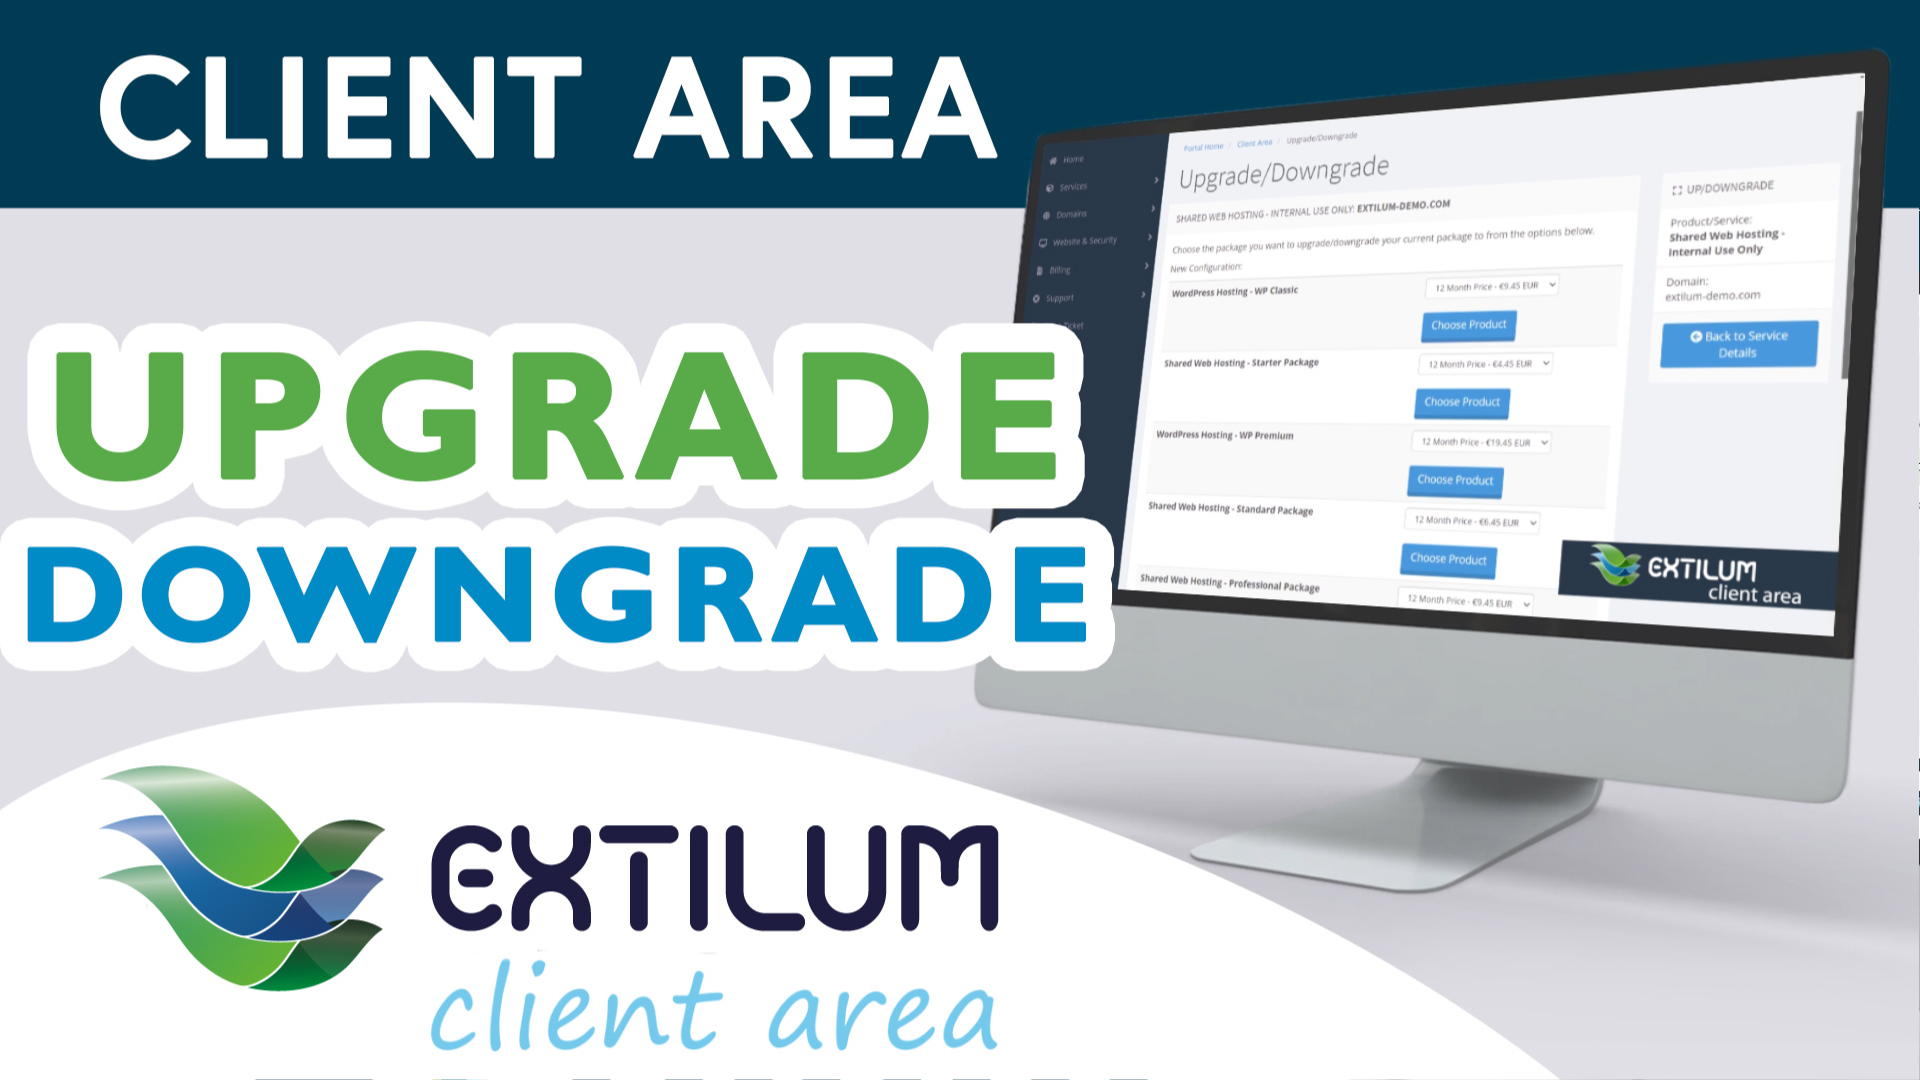 Extilum Client Area - Upgrade/Downgrade services